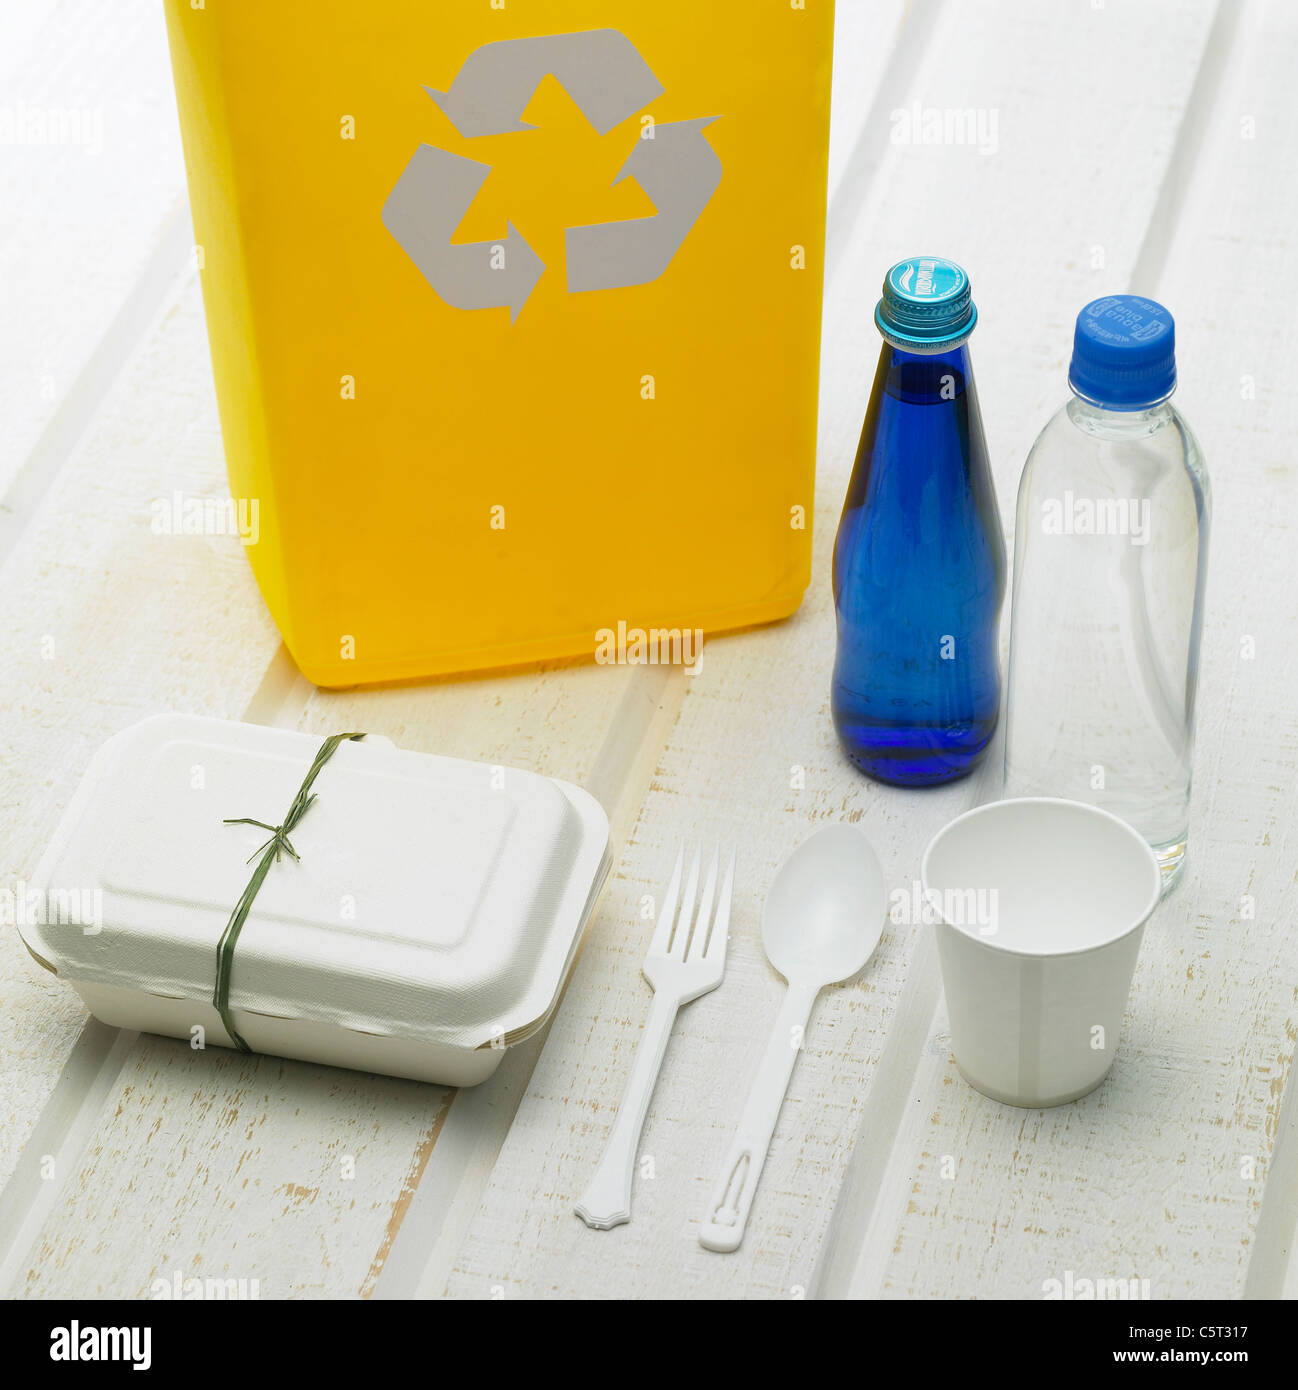 Bac de recyclage et d'autres objets sur le plancher Banque D'Images